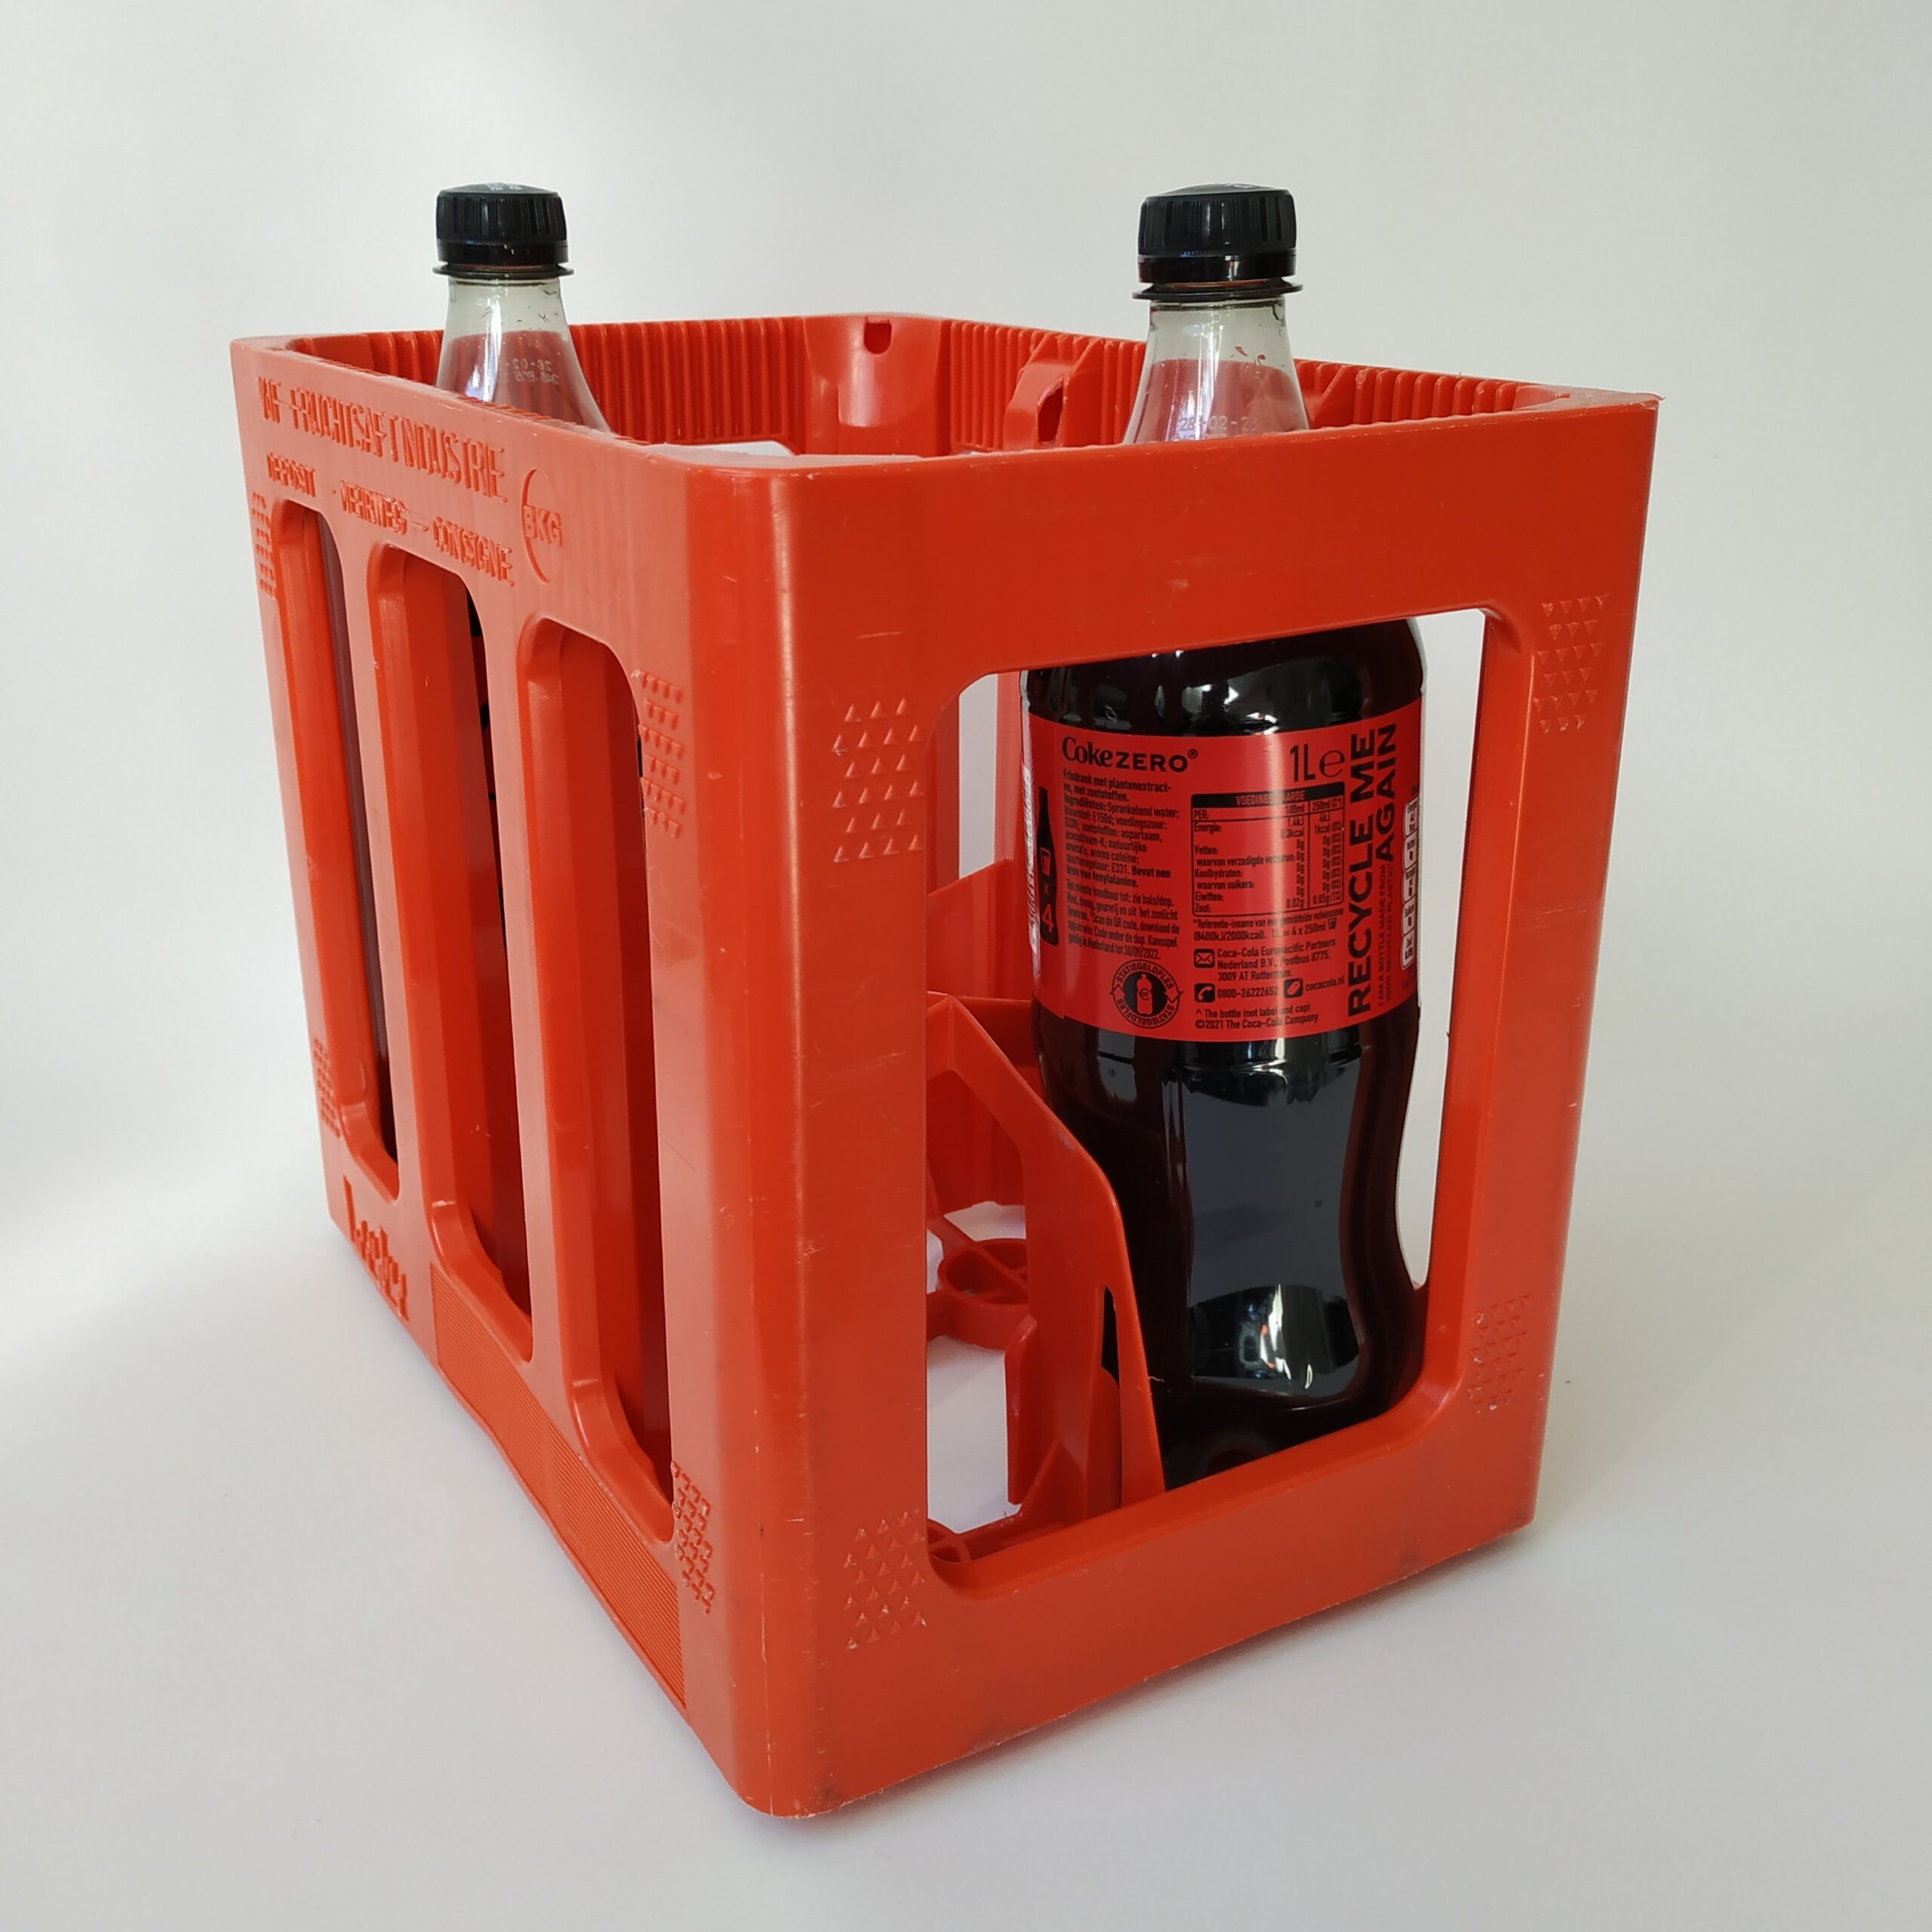 Kratje voor 6x – 1 liter fles – oranje – afmeting 30x20x25 cm (1)